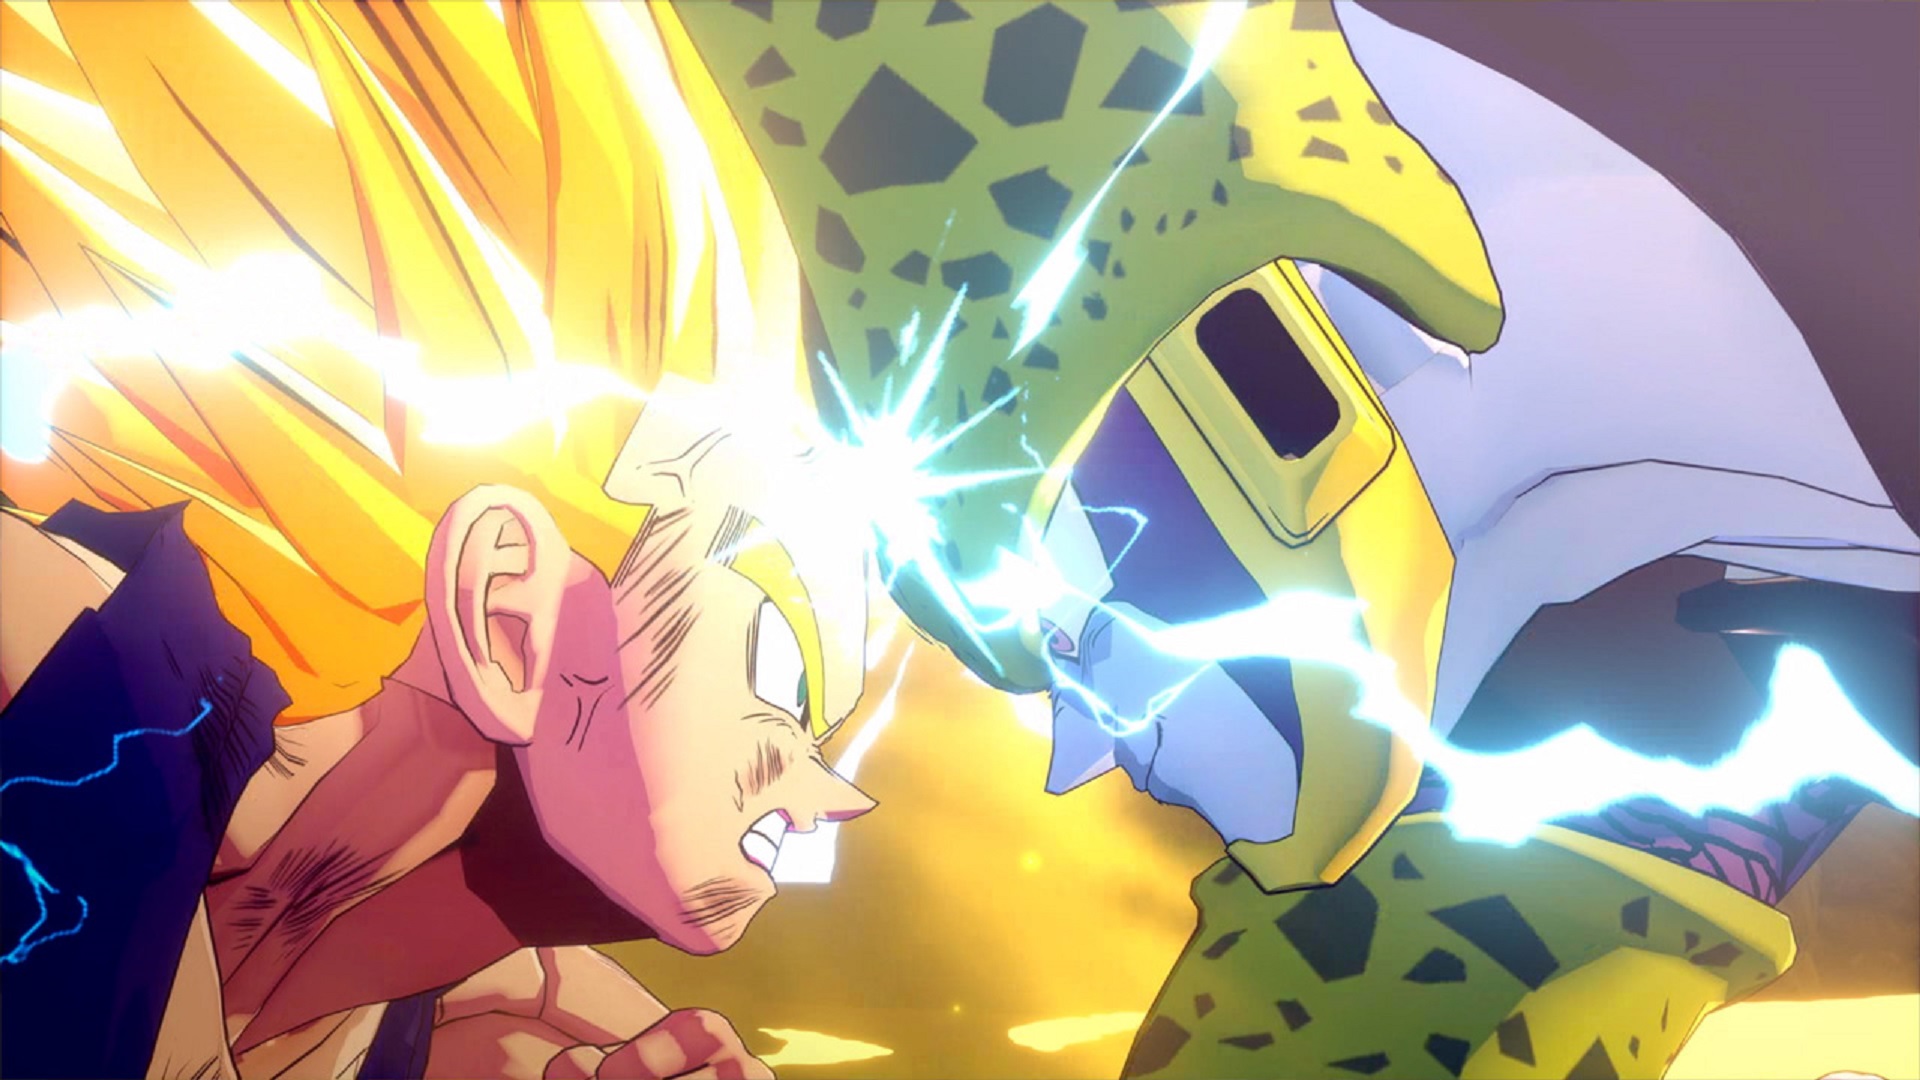 Best anime games: Dragon Ball Z Kakarot. Image shows Vegeta squaring off against Cell